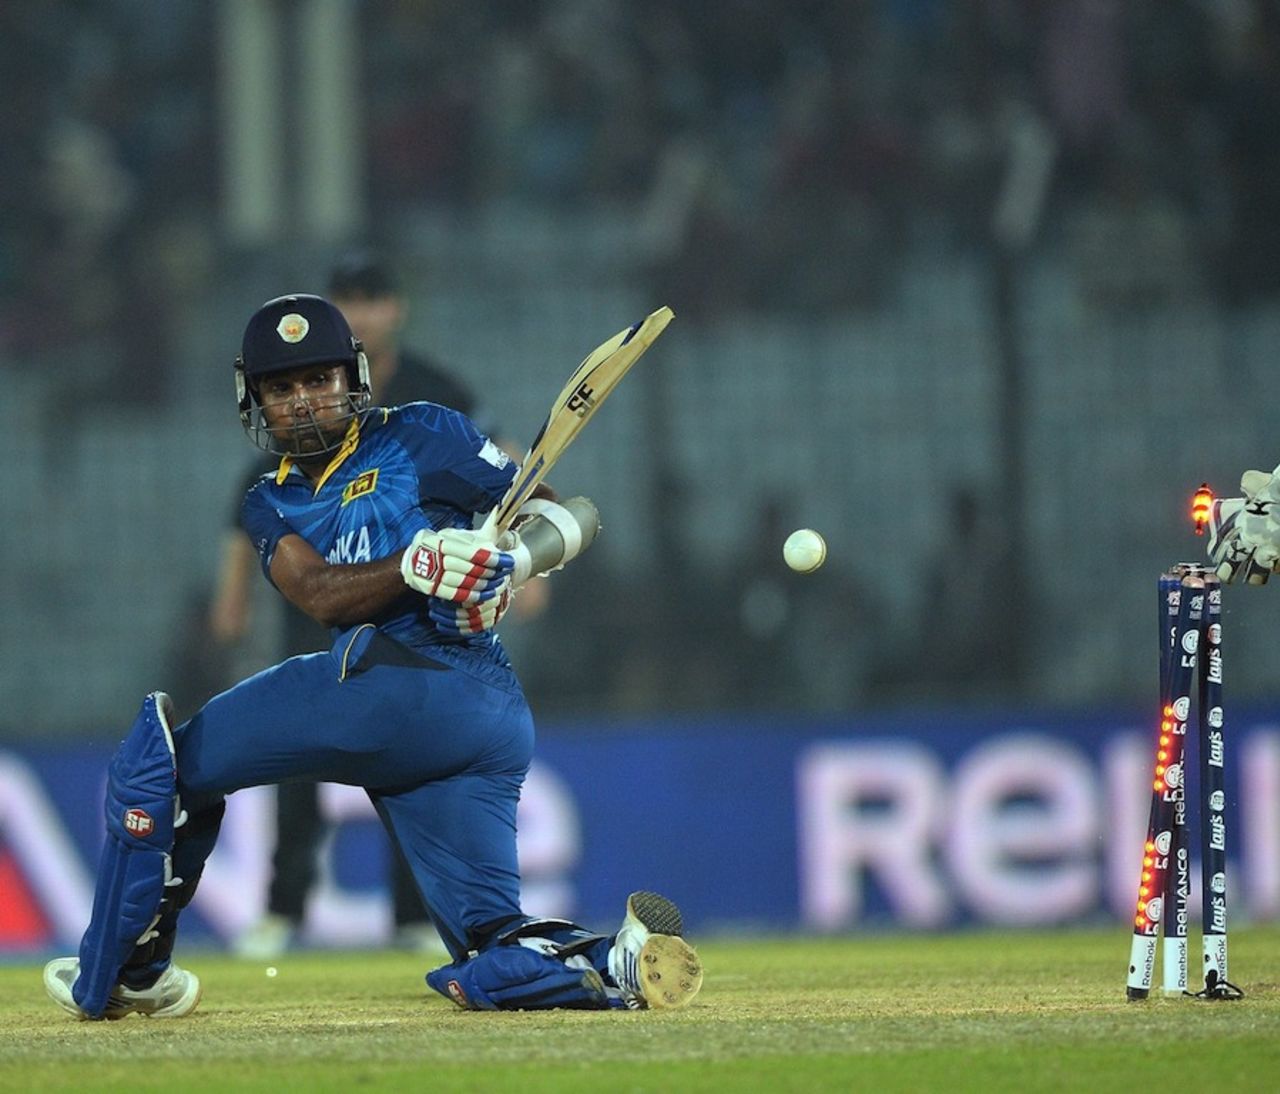 Mahela Jayawardene was bowled for 25, New Zealand v Sri Lanka, World T20, Group 1, Chittagong, March 31, 2014